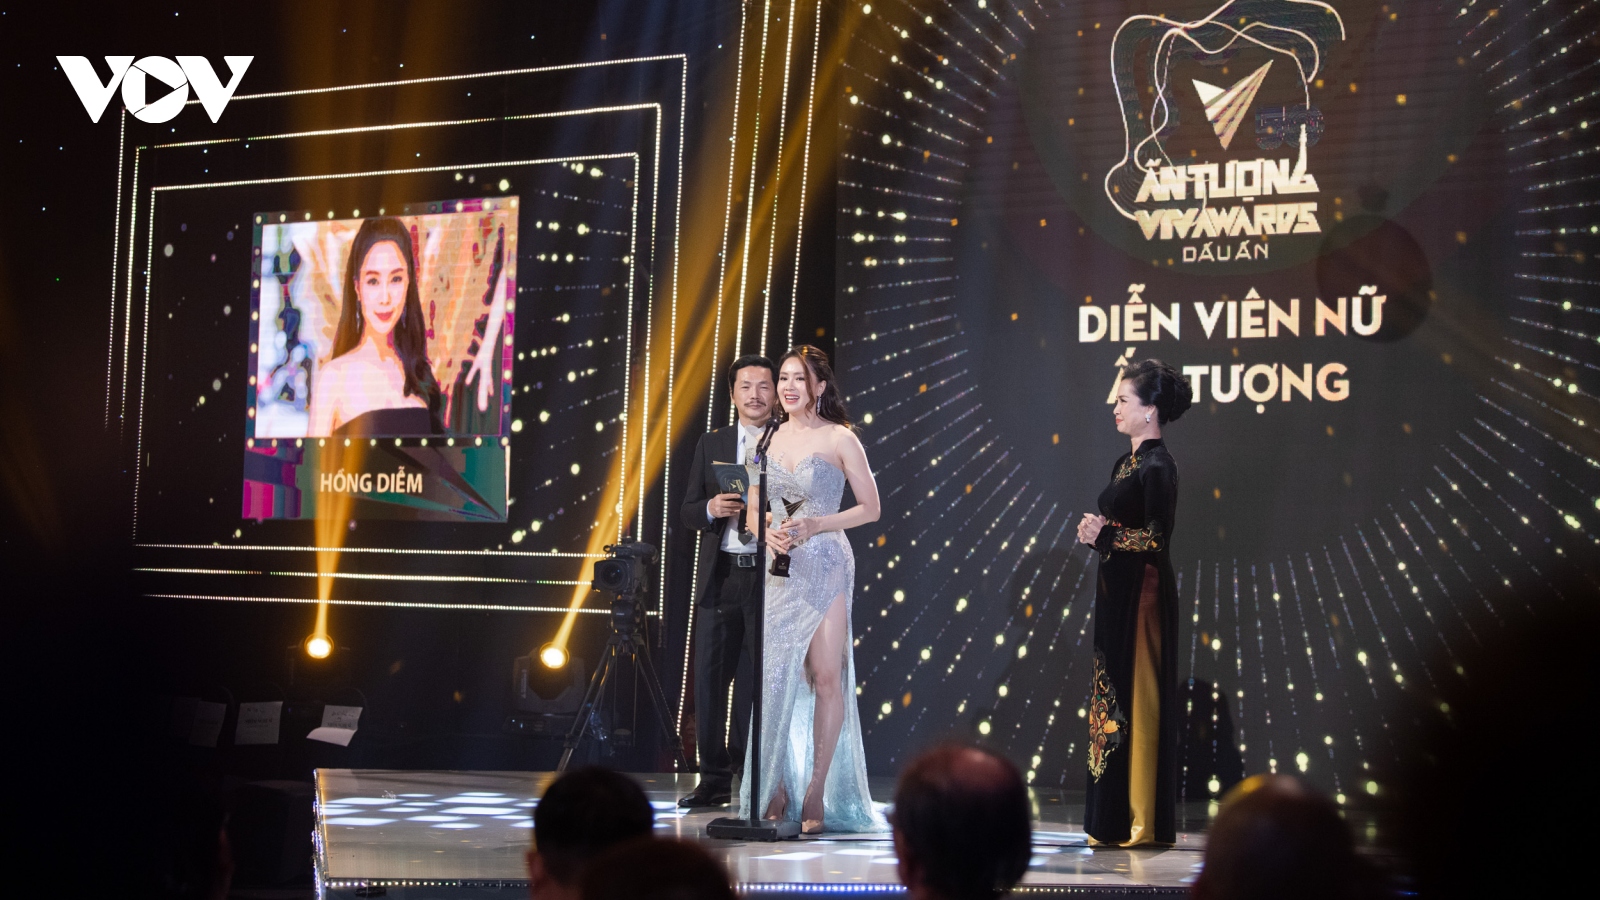 Hồng Diễm cùng bộ phim "Hoa hồng trên ngực trái" đại thắng tại VTV Awards 2020